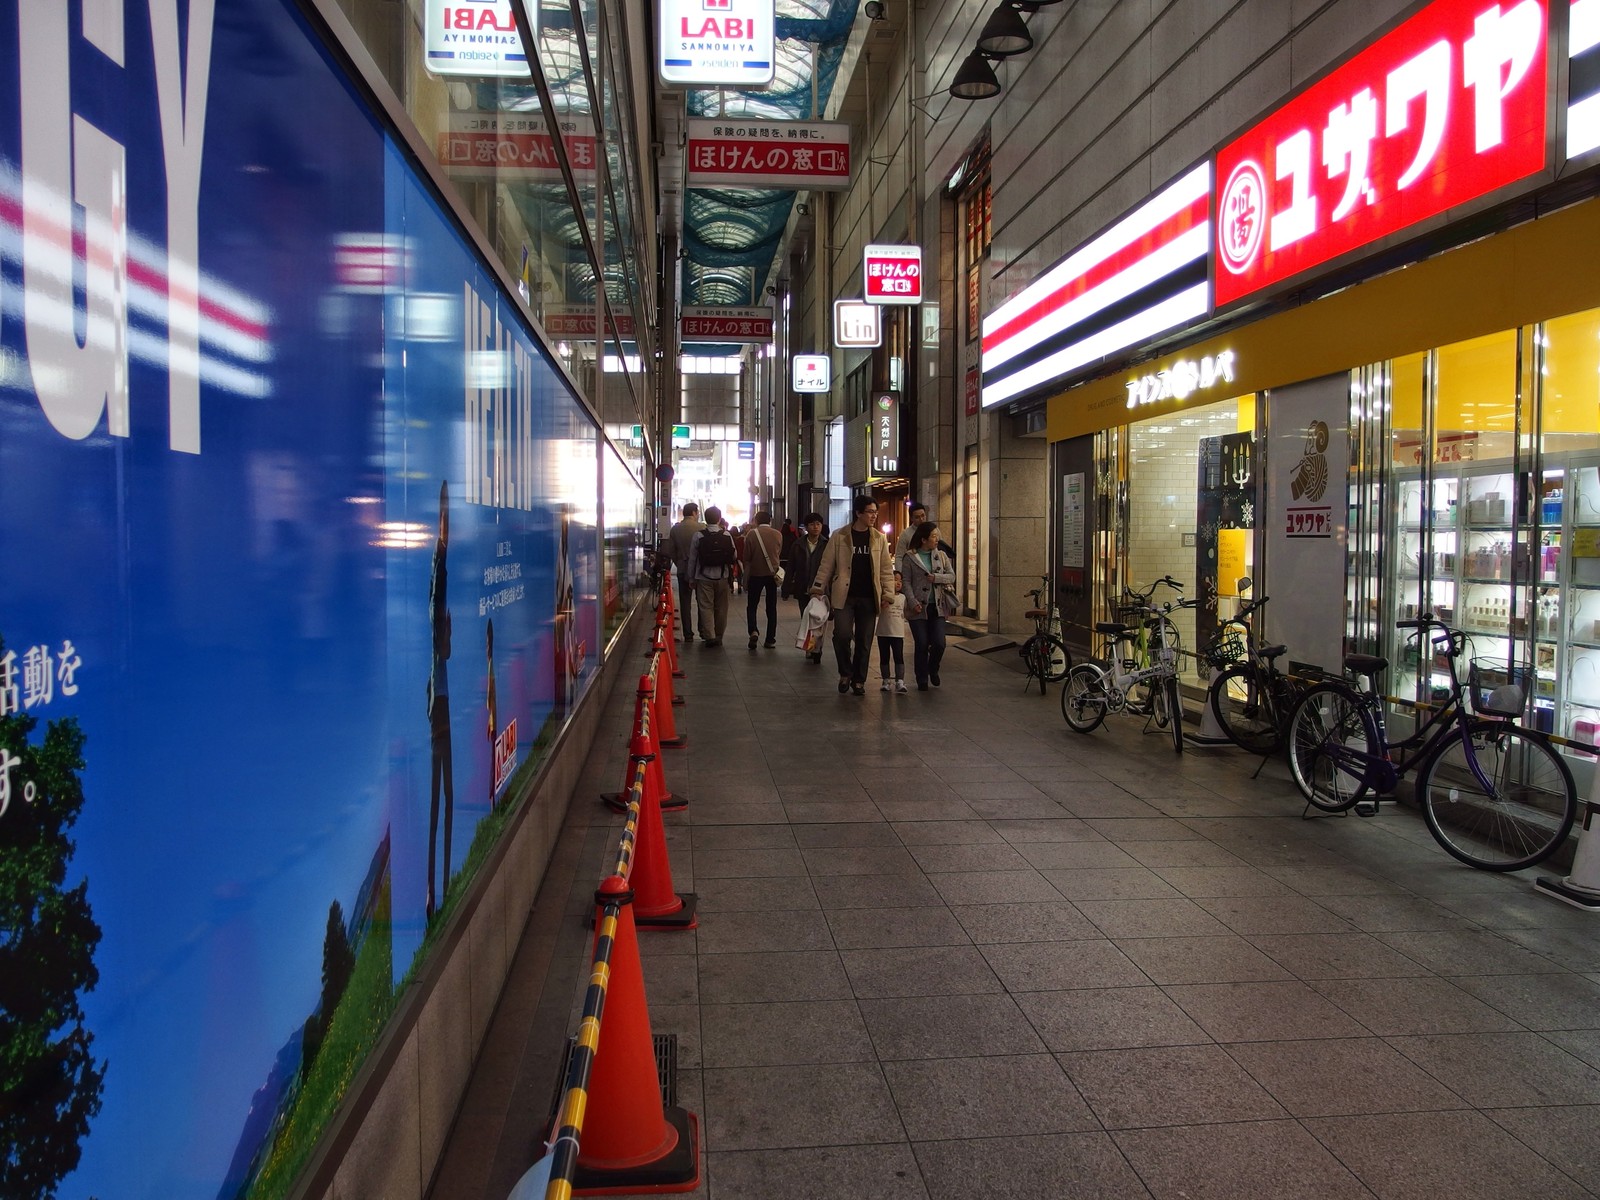 Tsutaya三宮店のあるユザワヤビルに アインズ トルぺ ってドラッグストアができてる 神戸ジャーナル